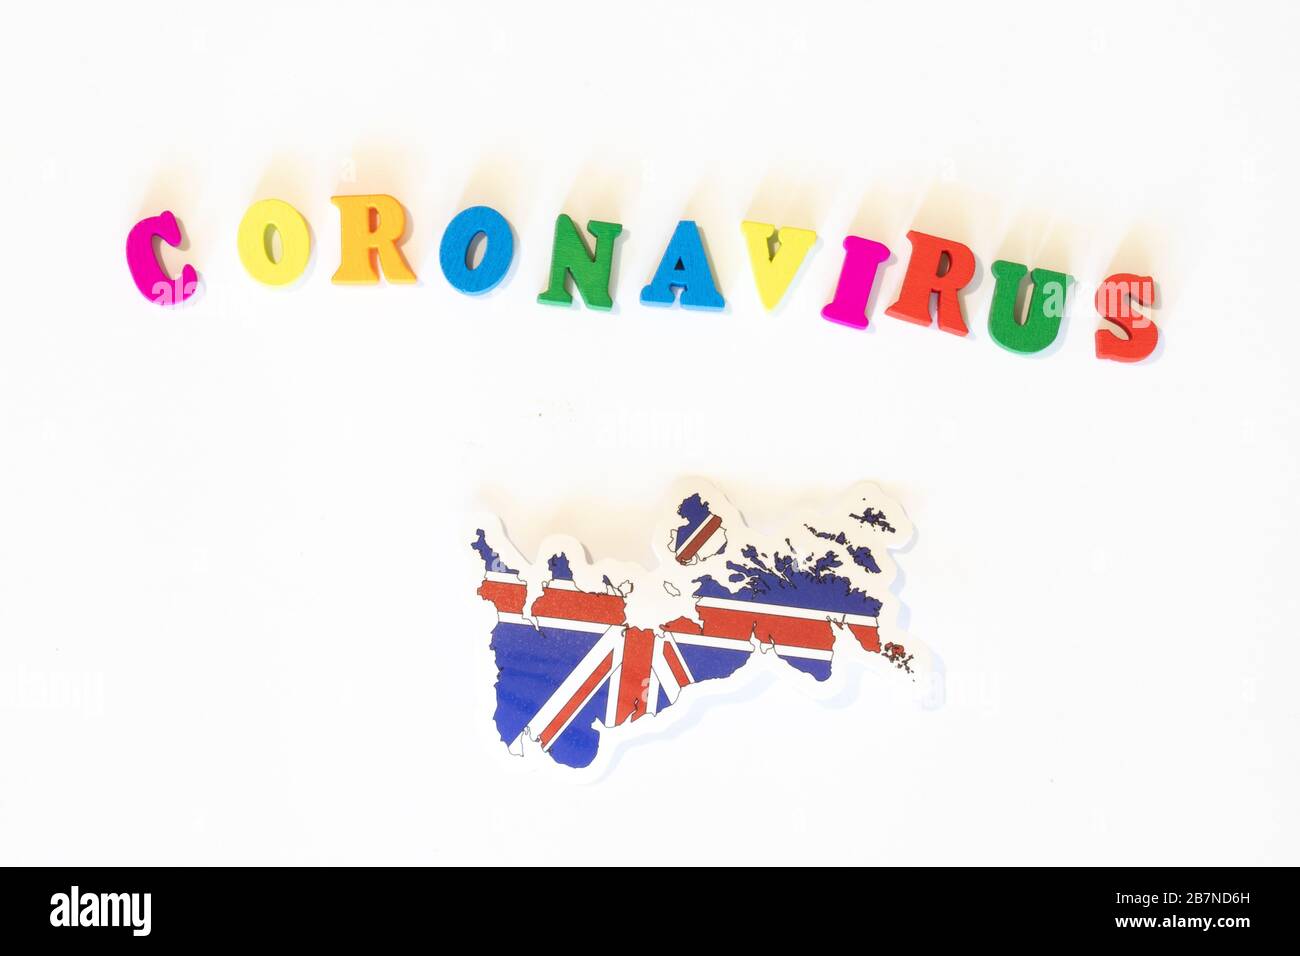 Regno Unito bandiera nazionale del Regno Unito su sfondo bianco con l'iscrizione Corona virus fatta con la bacheca delle lettere. Il coronavirus è un virus pandemico Foto Stock